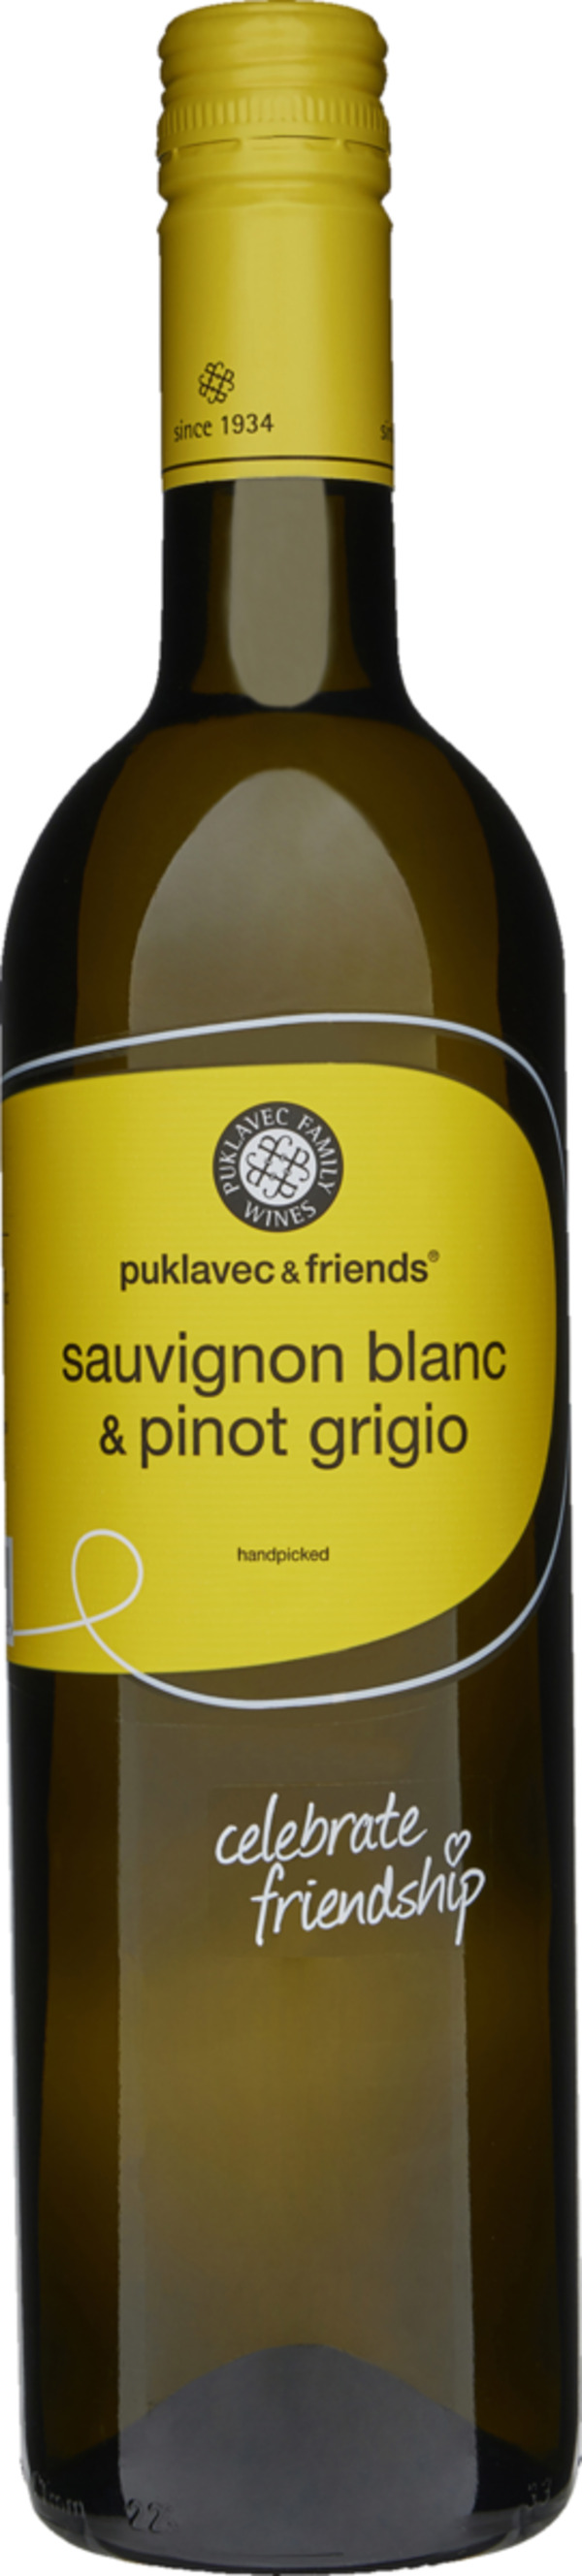 Bild 1 von Punklavec & Friends Sauvignon Blanc & Pinot Grigio